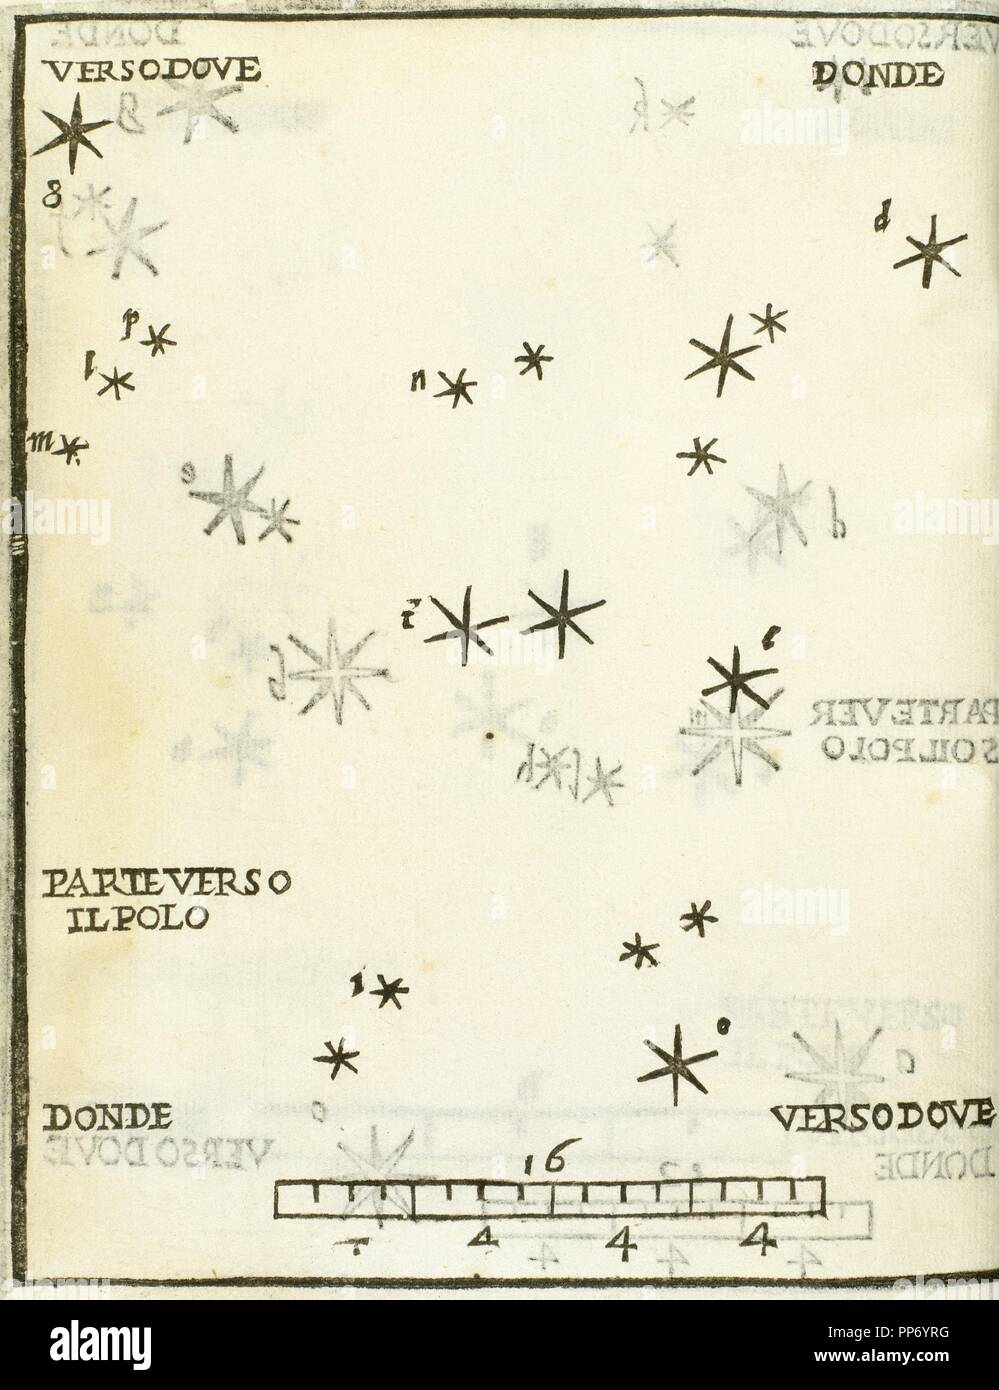 ANDROMEDA. Gravur des Jahres 1559, in dem die Struktur der Konstellation vertreten ist. Es gehört zu der Astronomie Buch 'Dele Stelle Fisse', die Arbeit von Alejandro Picolomini, in Venedig veröffentlicht. Stockfoto